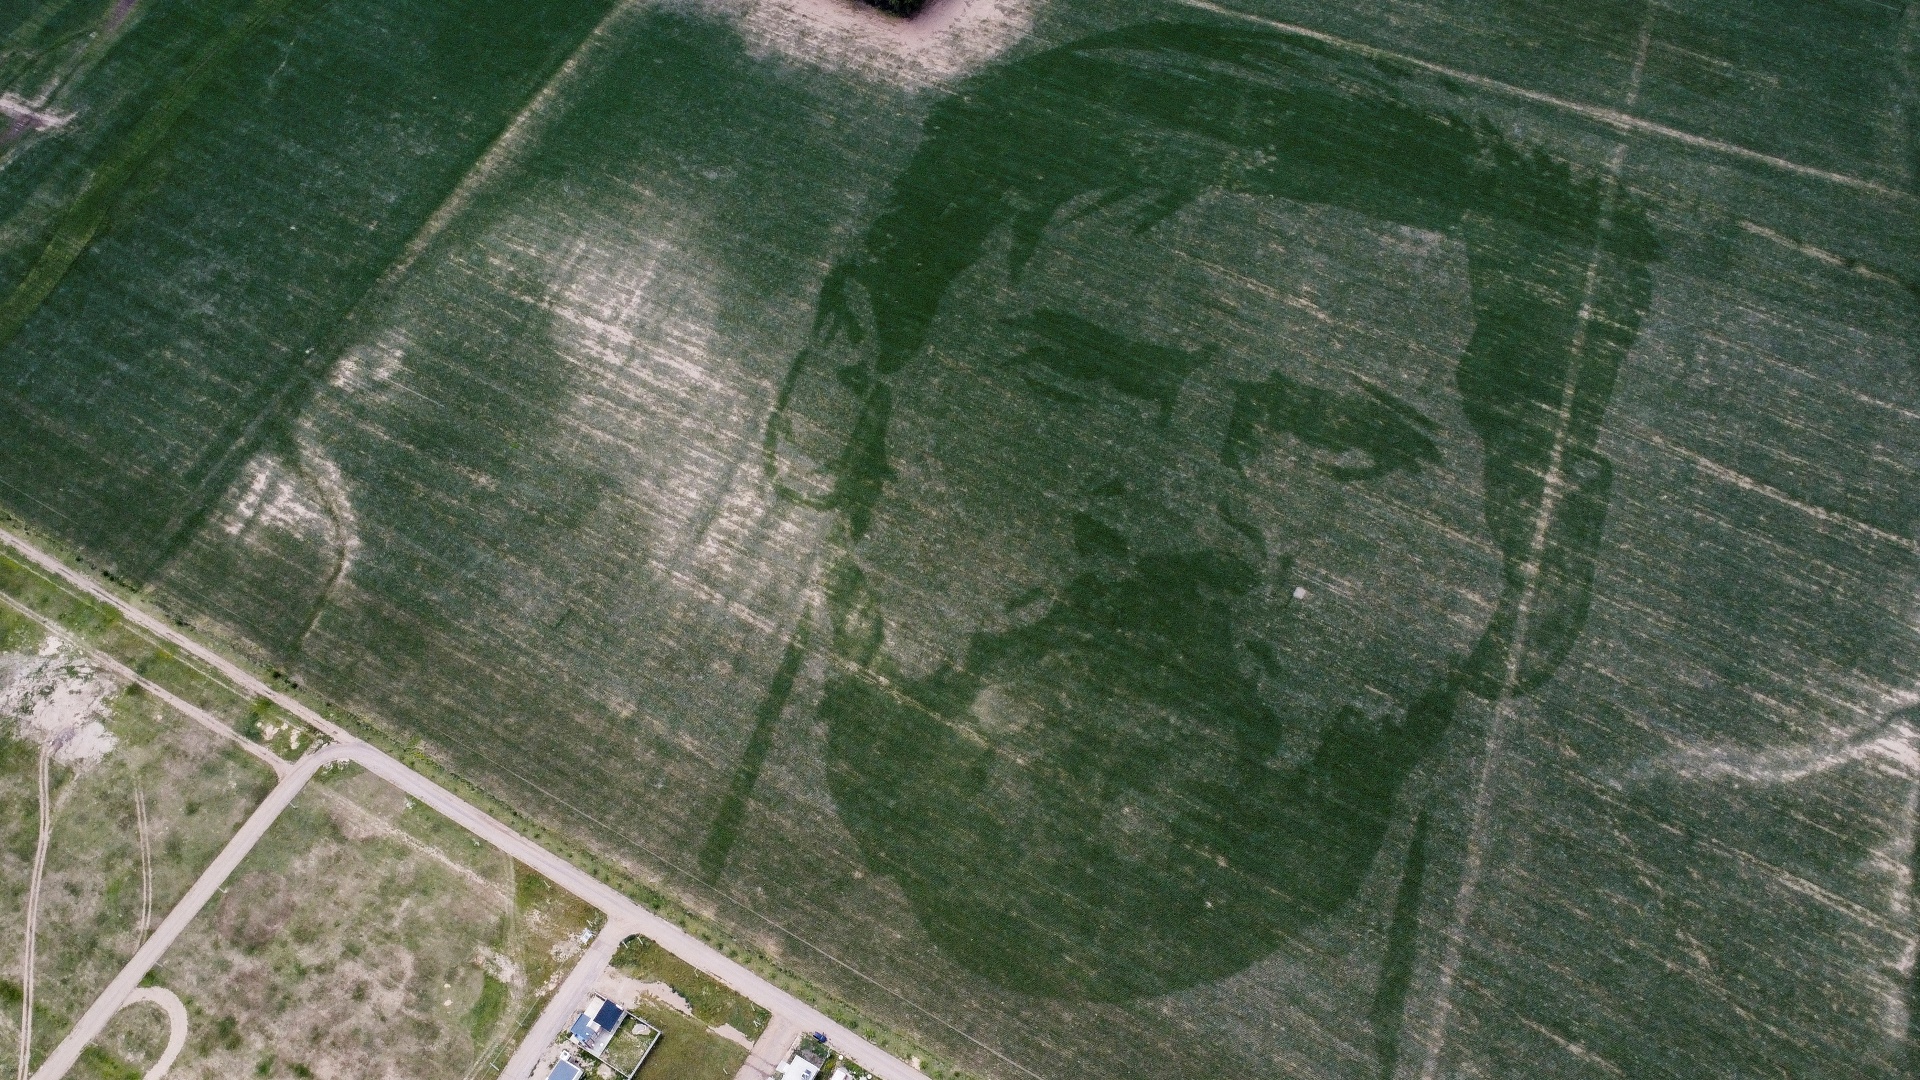 Гигантский портрет Лионеля Месси появился на кукурузном поле в Аргентине